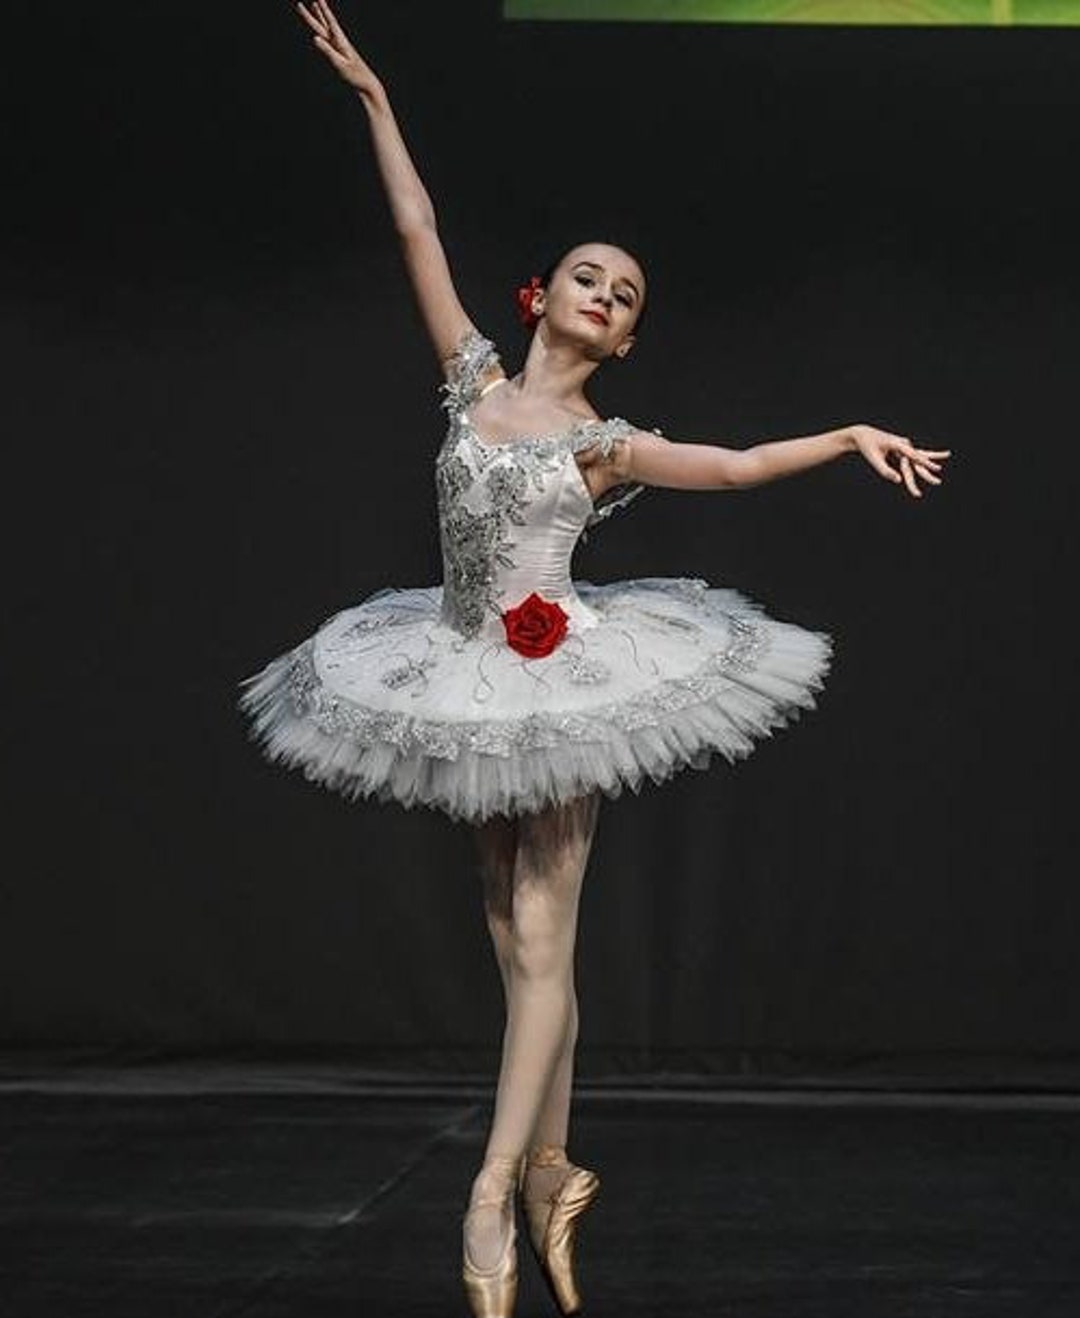 Joven Bolos Automáticamente Ballet Profesional Tutu YAGP Danza Clásica Variación - Etsy España